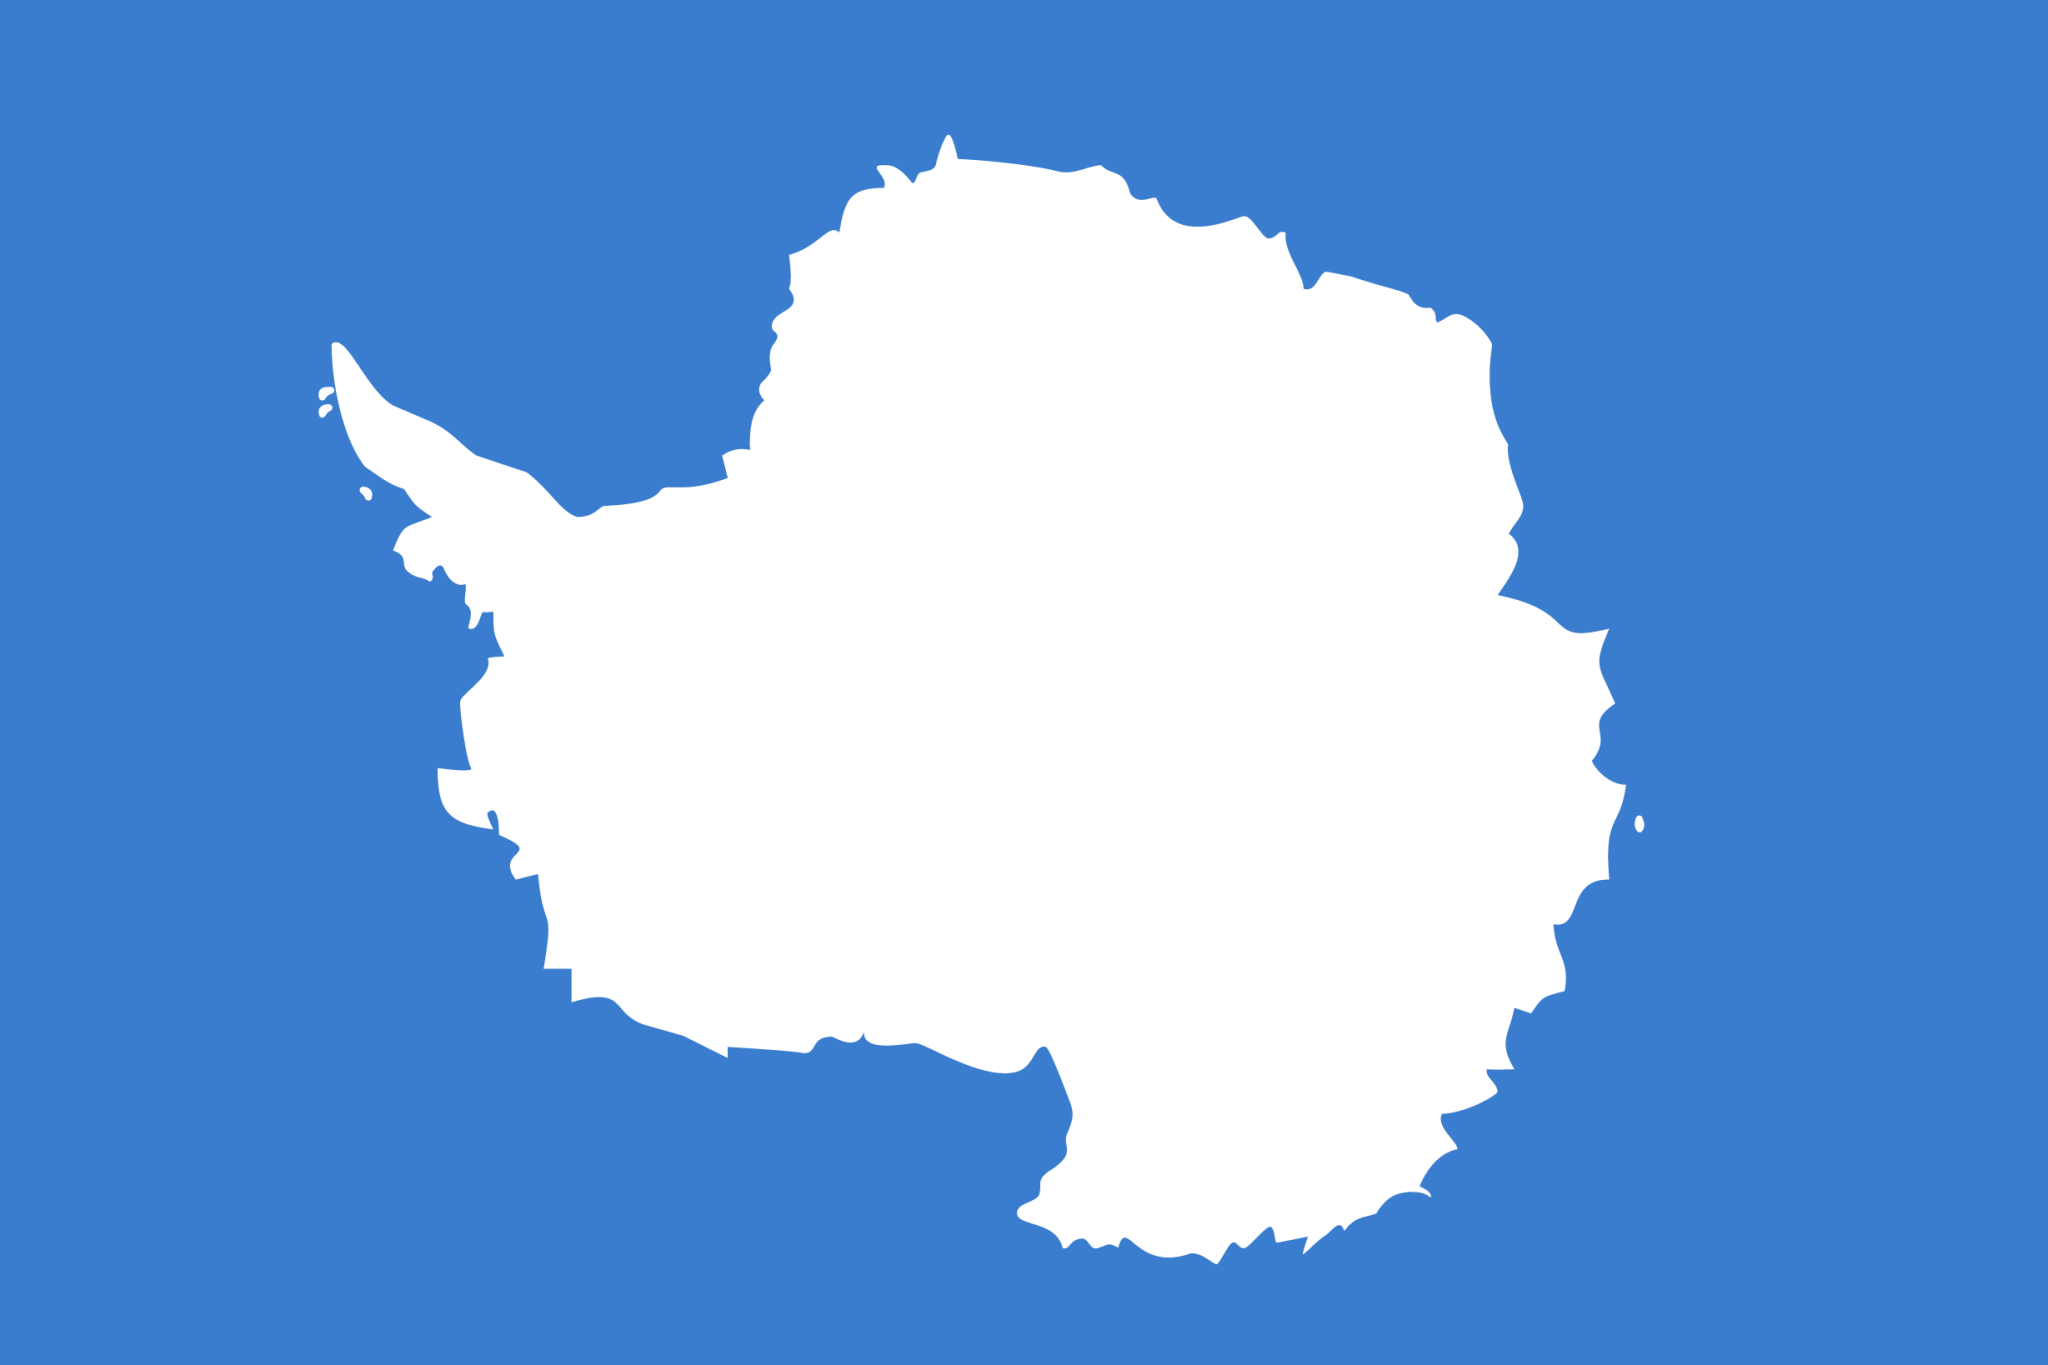 Antarctica icon